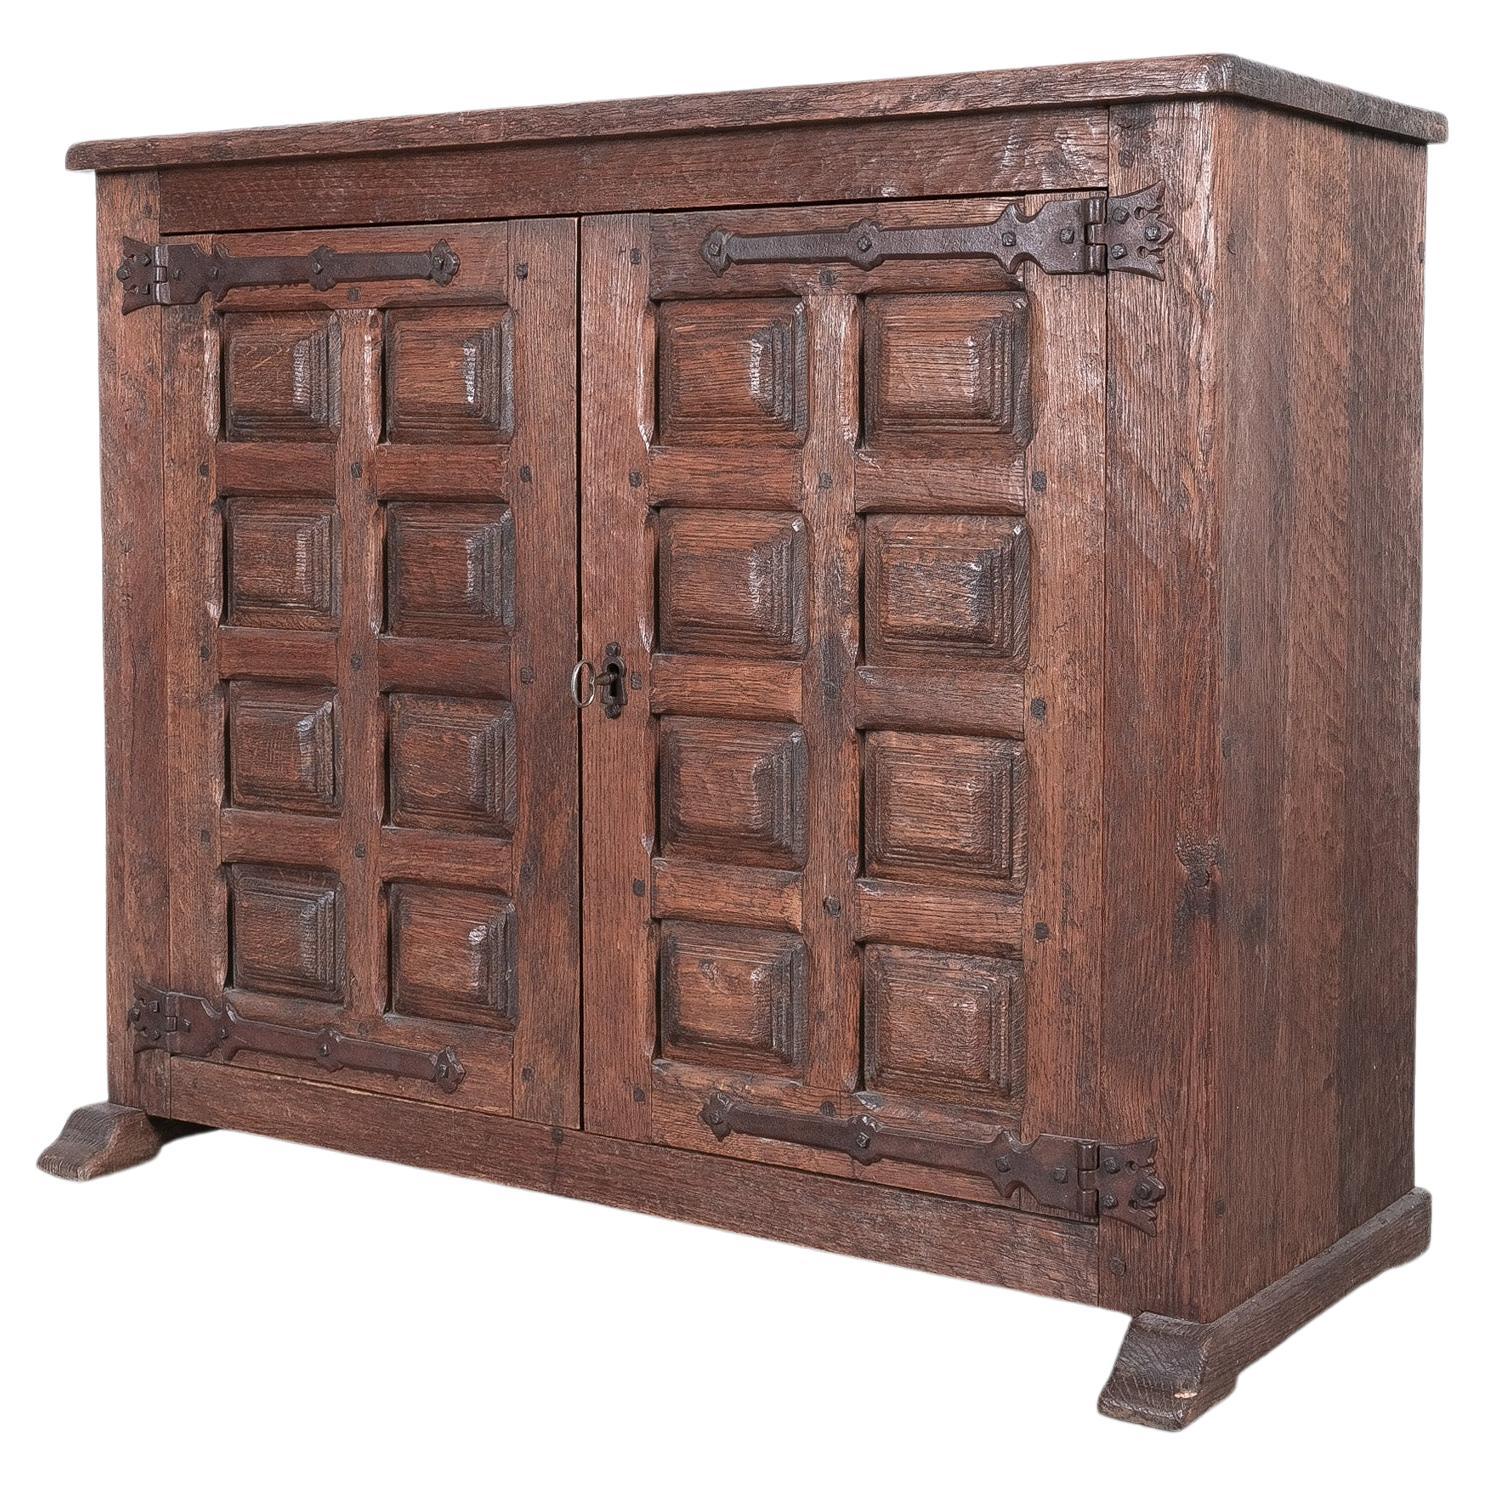 Brutalist Artisan Oak Cabinet or Sideboard With Carved Details, 1940 France For Sale 8